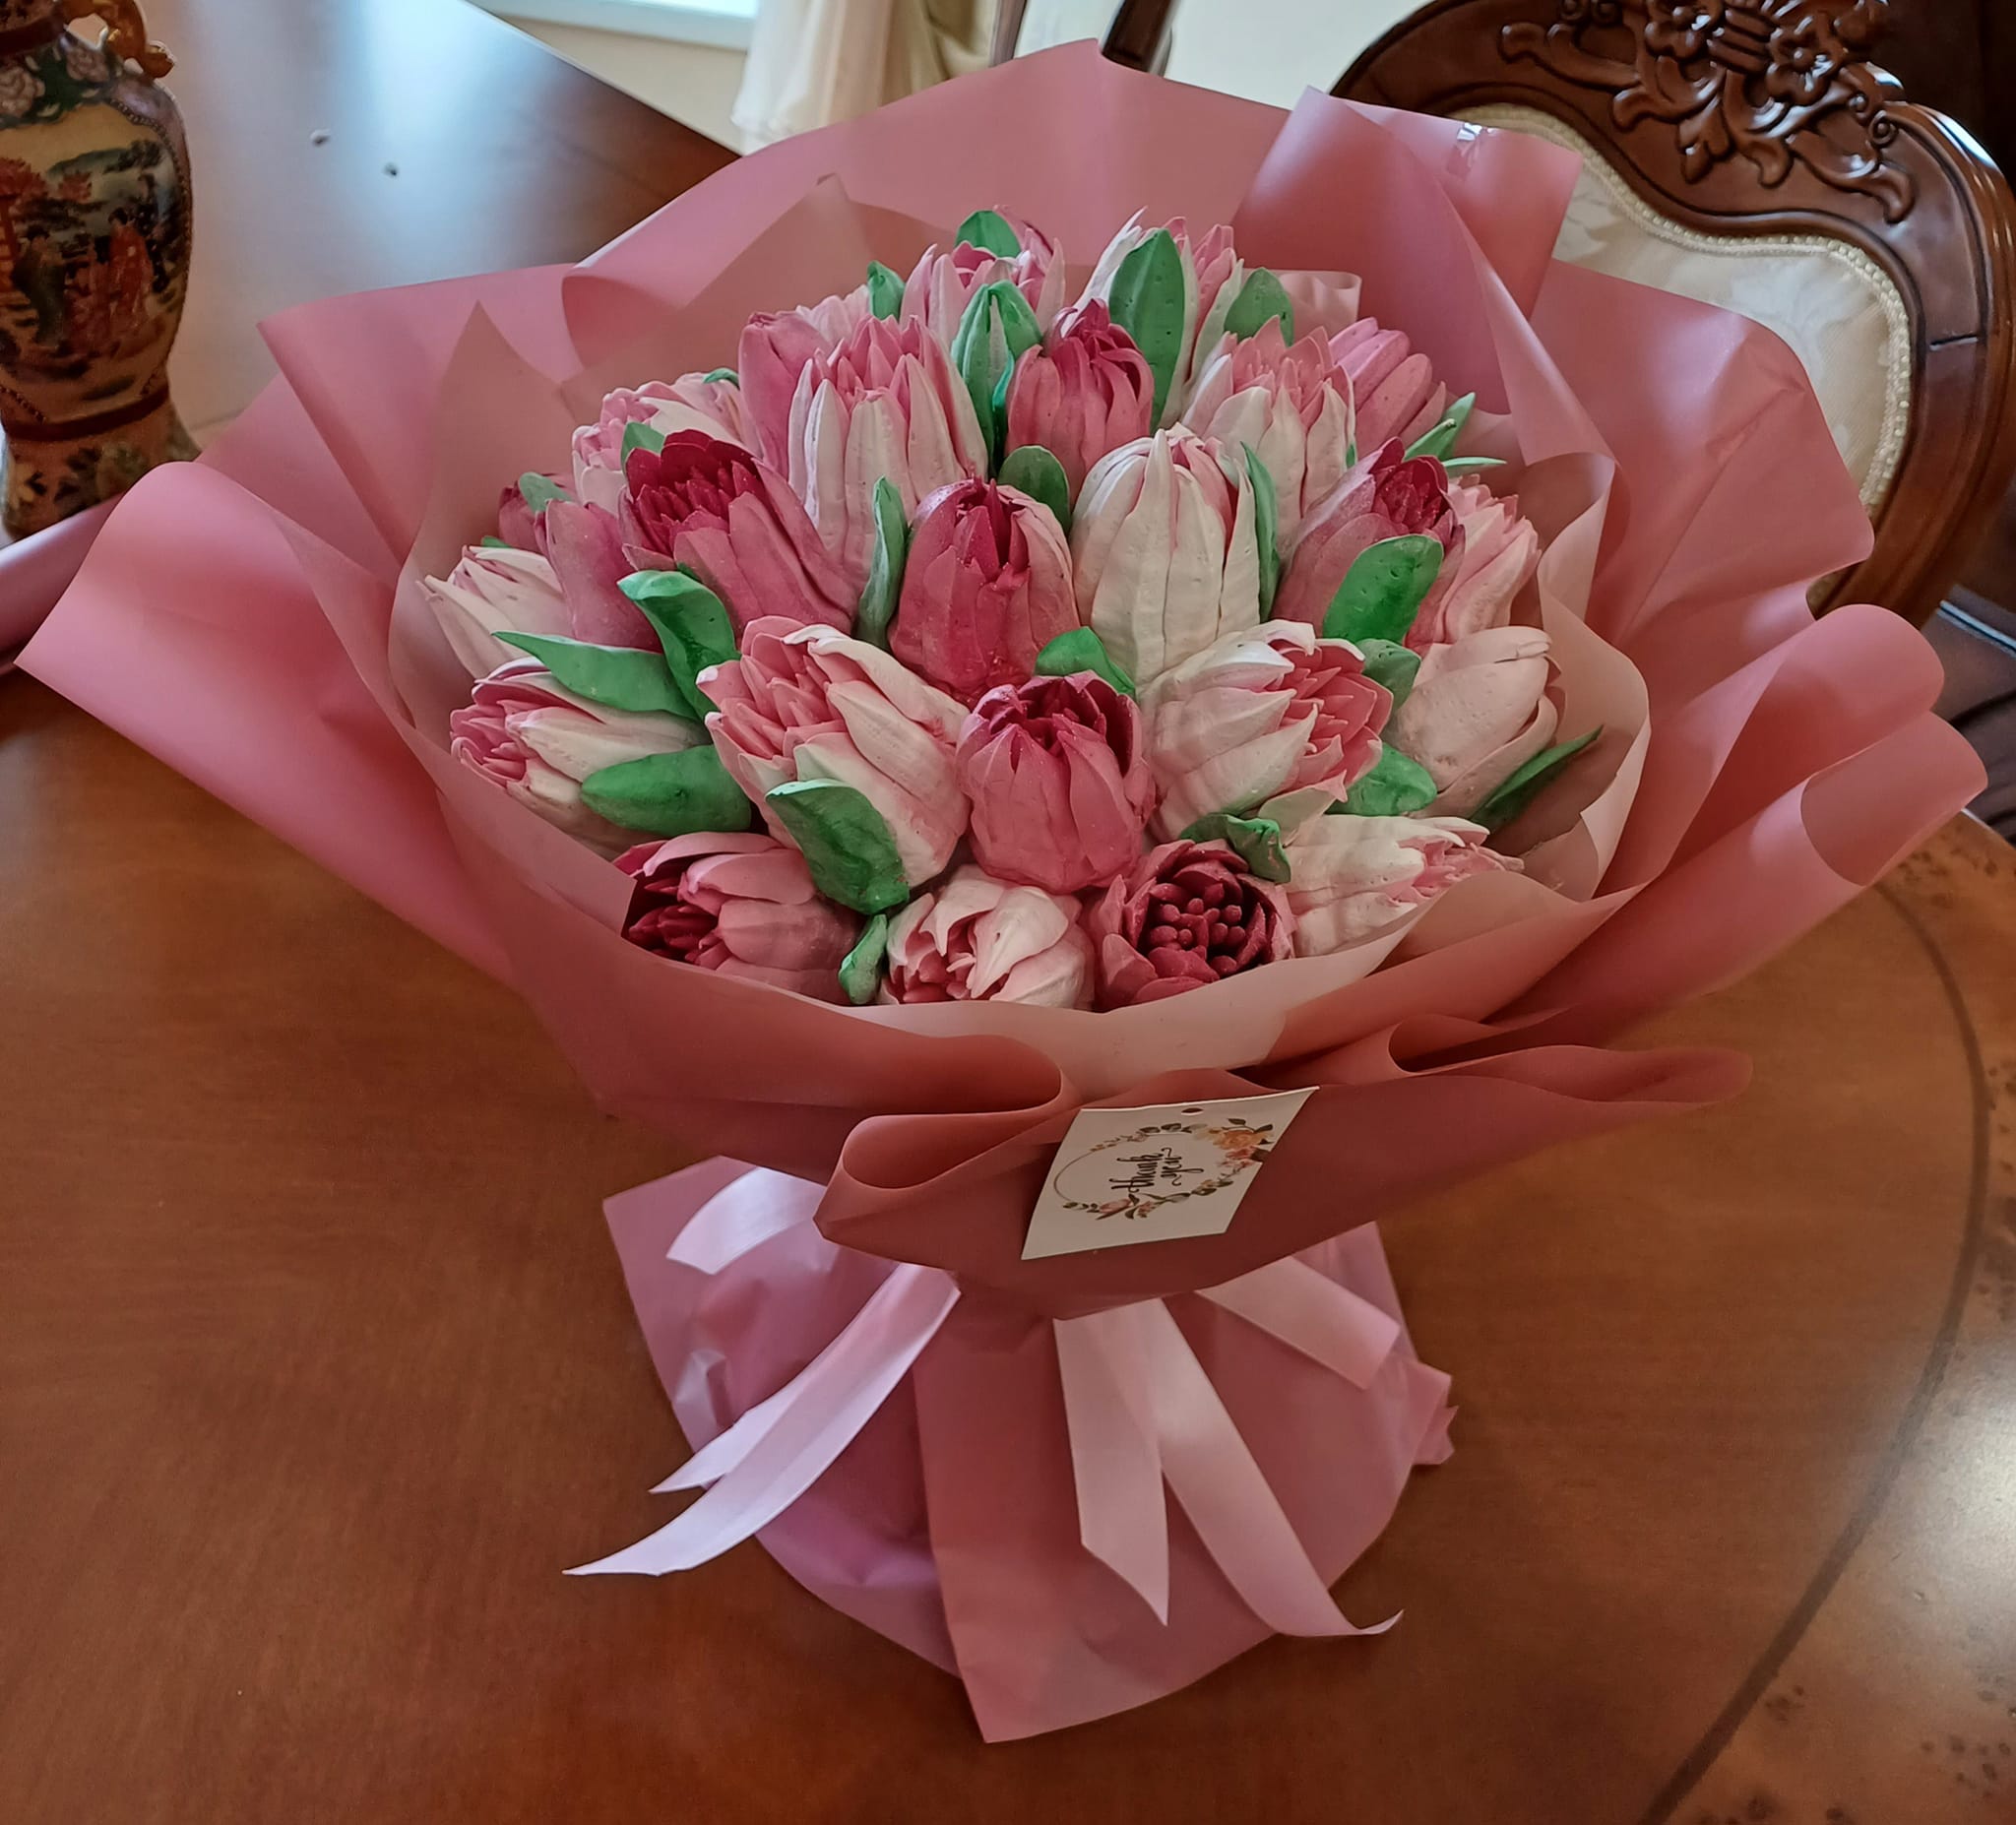 Переяславка Наталія Трошина створює зефірні букети квітів: кондитерством захопилася, випікаючи пряники для маленького онука